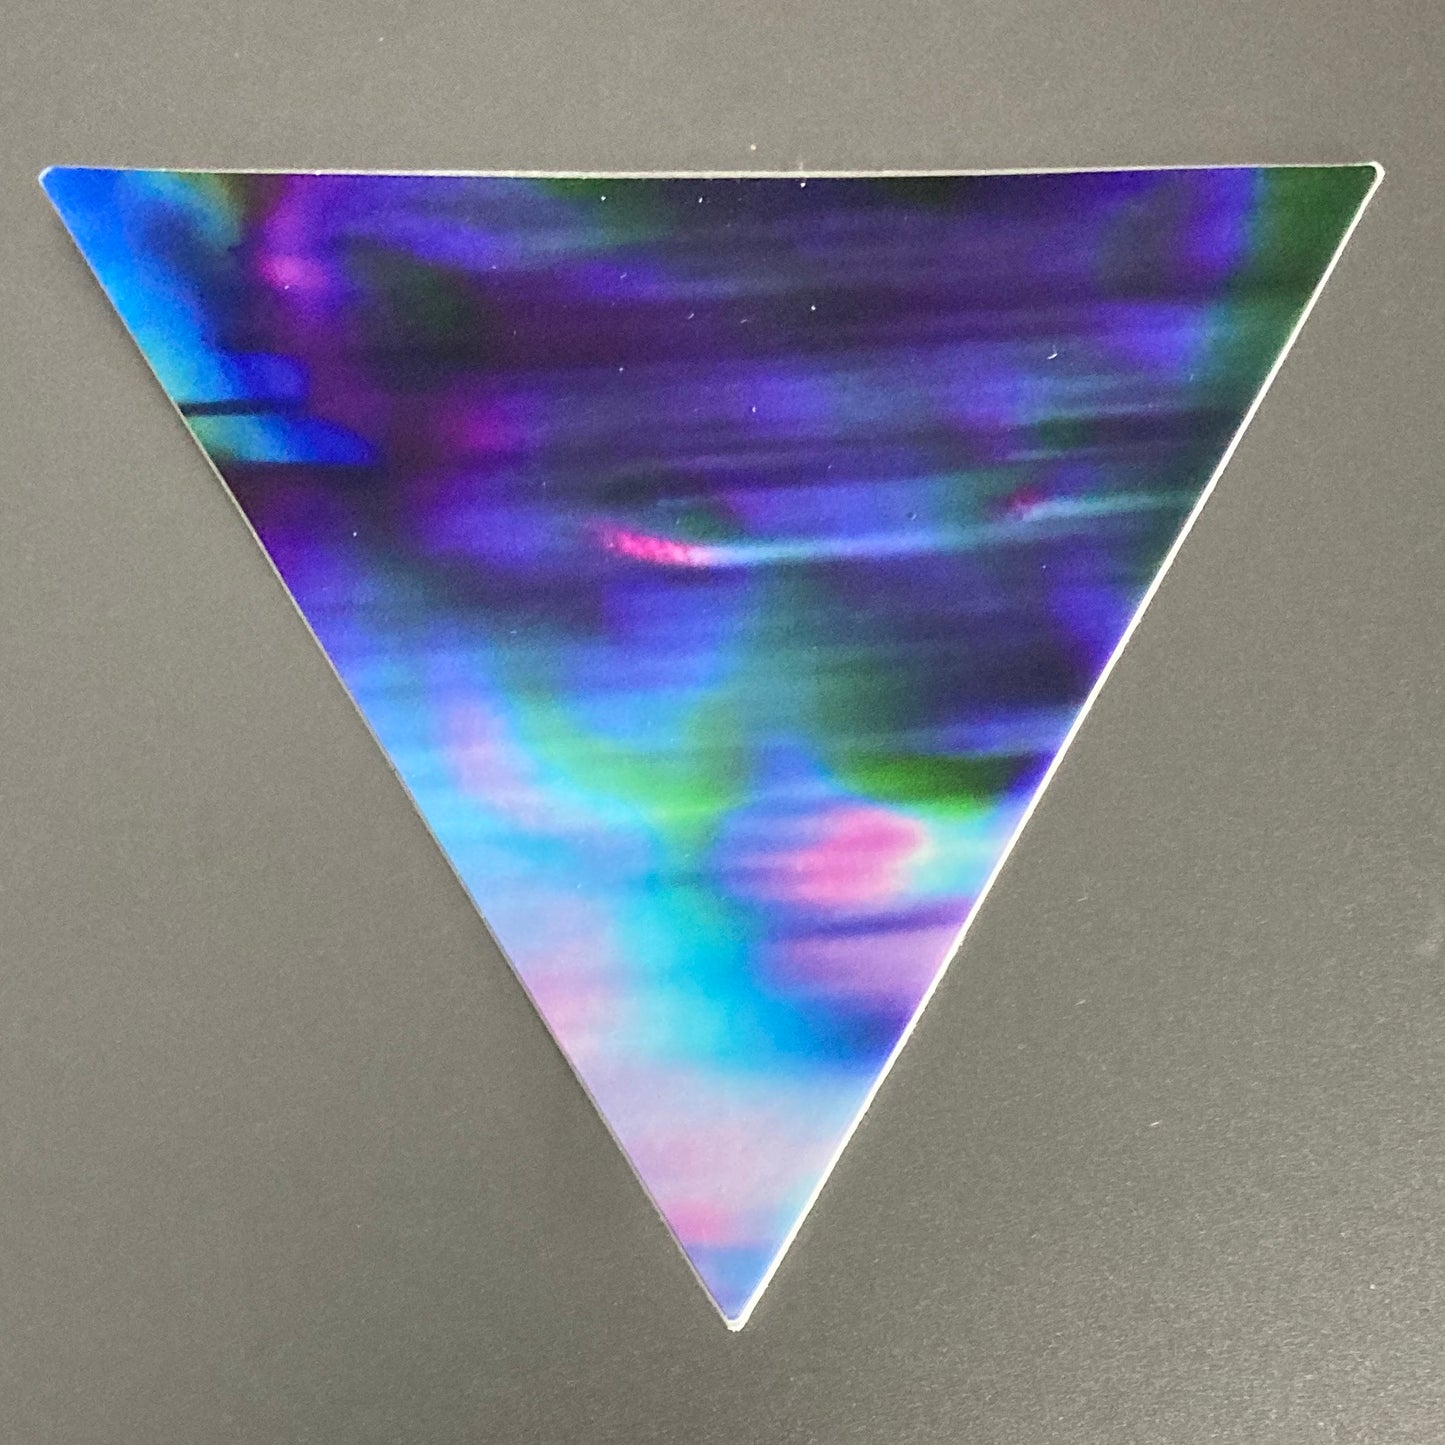 purple cougar triangle sticker